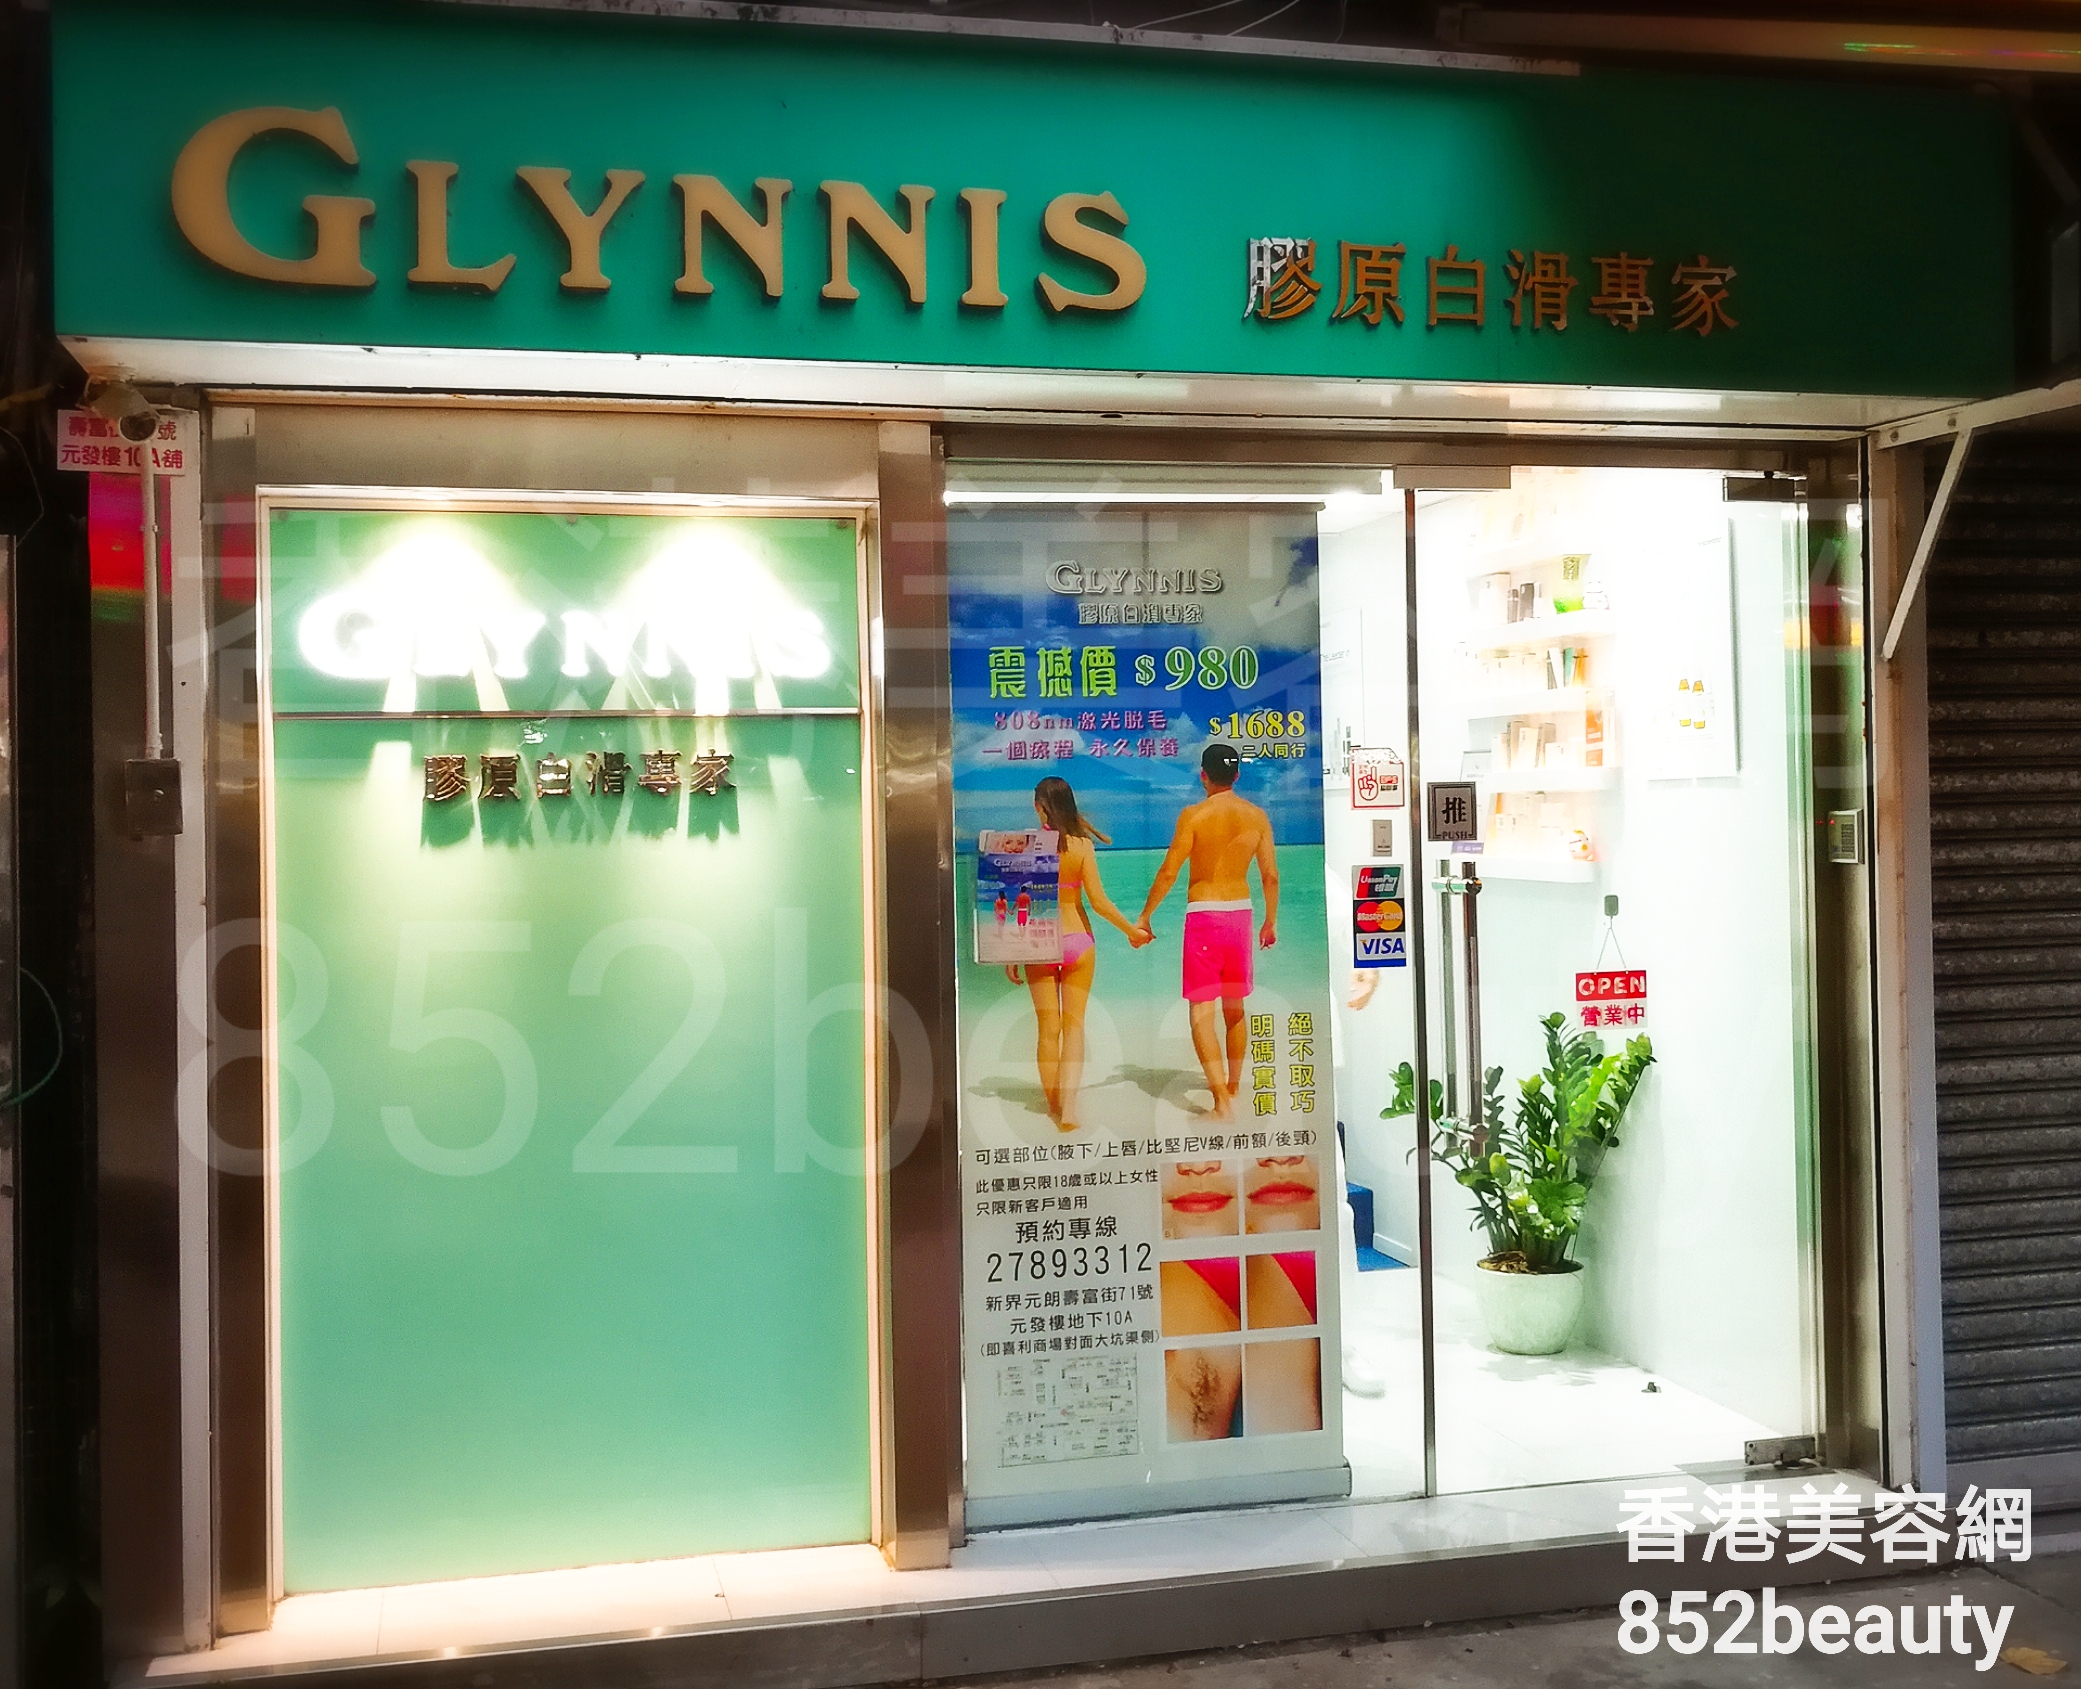 香港美容網 Hong Kong Beauty Salon 美容院 / 美容師: GLYNNIS 膠原白滑專家 (元朗店)